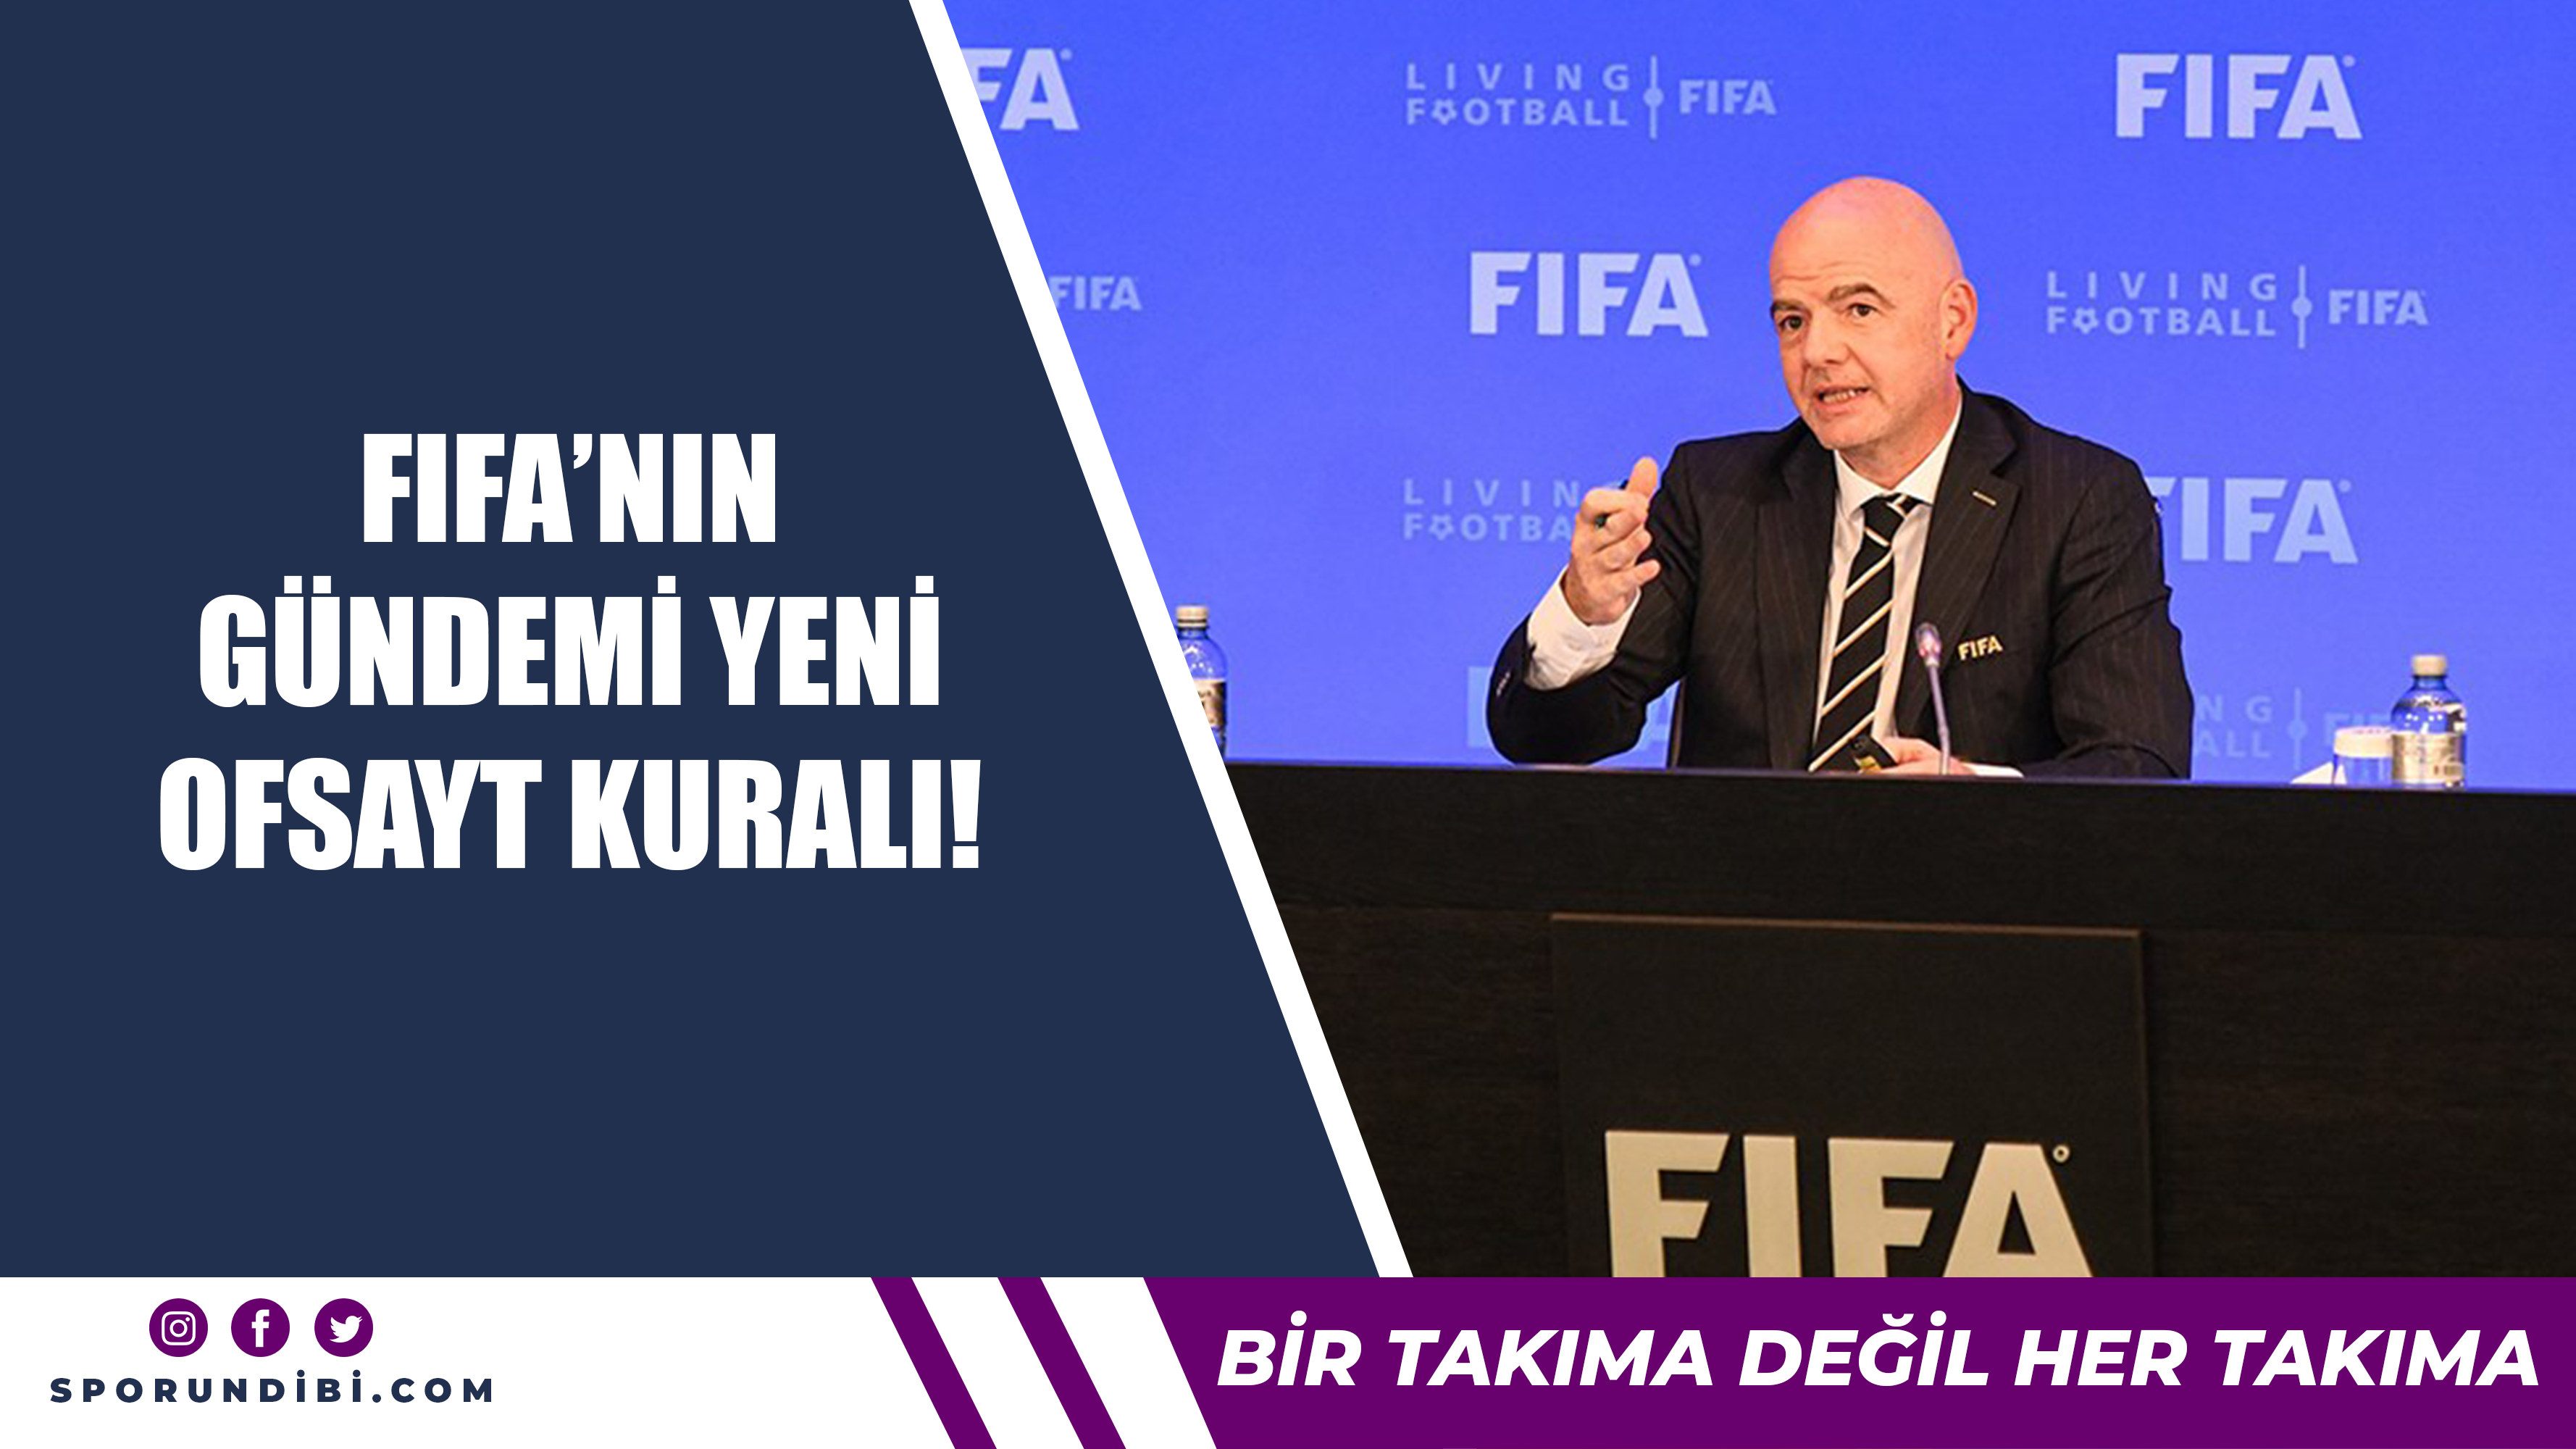 FIFA'nın gündemi yeni ofsayt kuralı!